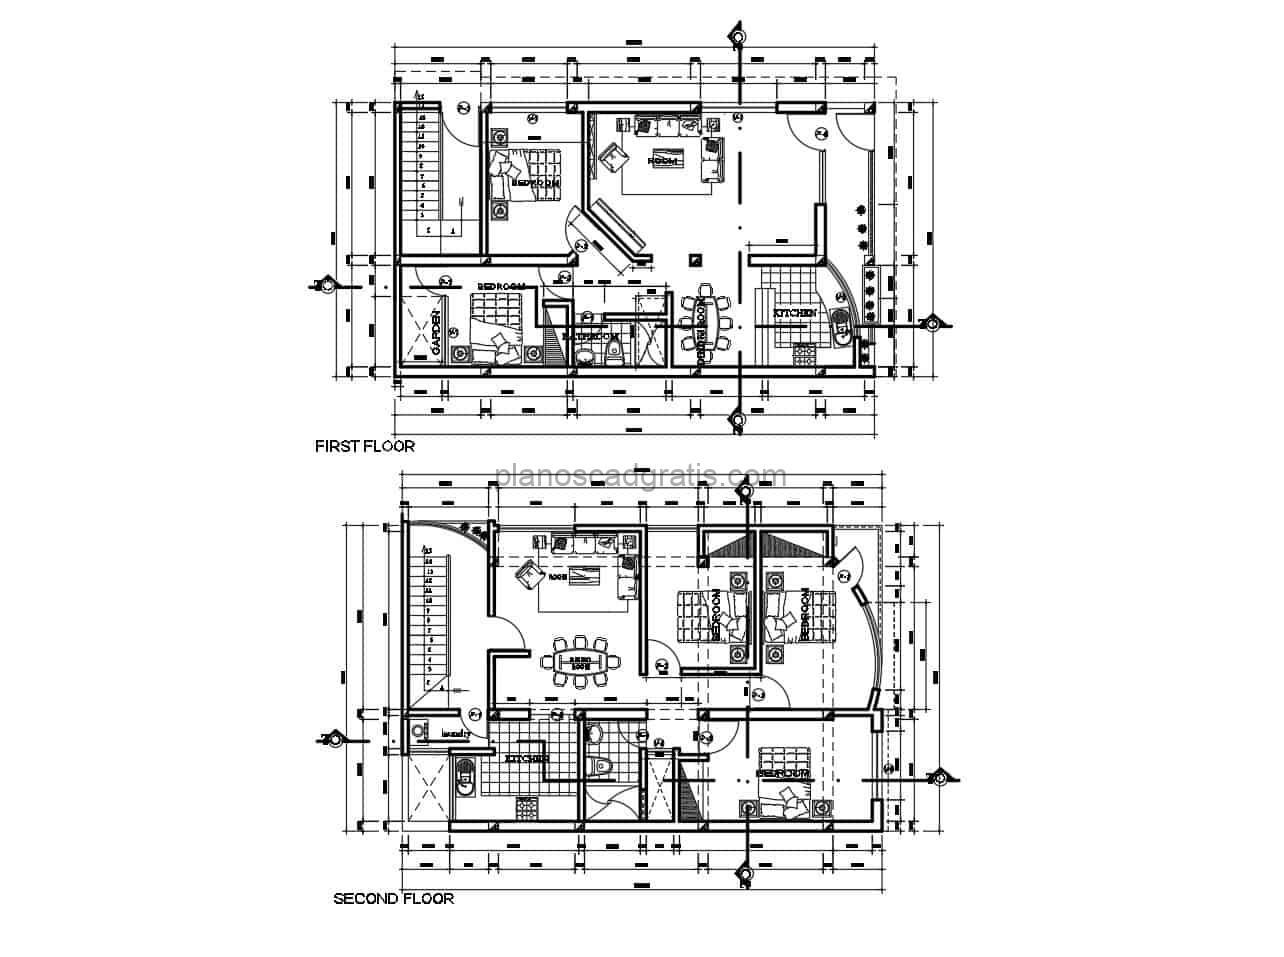 planos cad dwg con dimensiones y detalles de casa duplex en dos niveles individuales con tres habitaciones, planos para descarga gratis en formato dwg de autocad